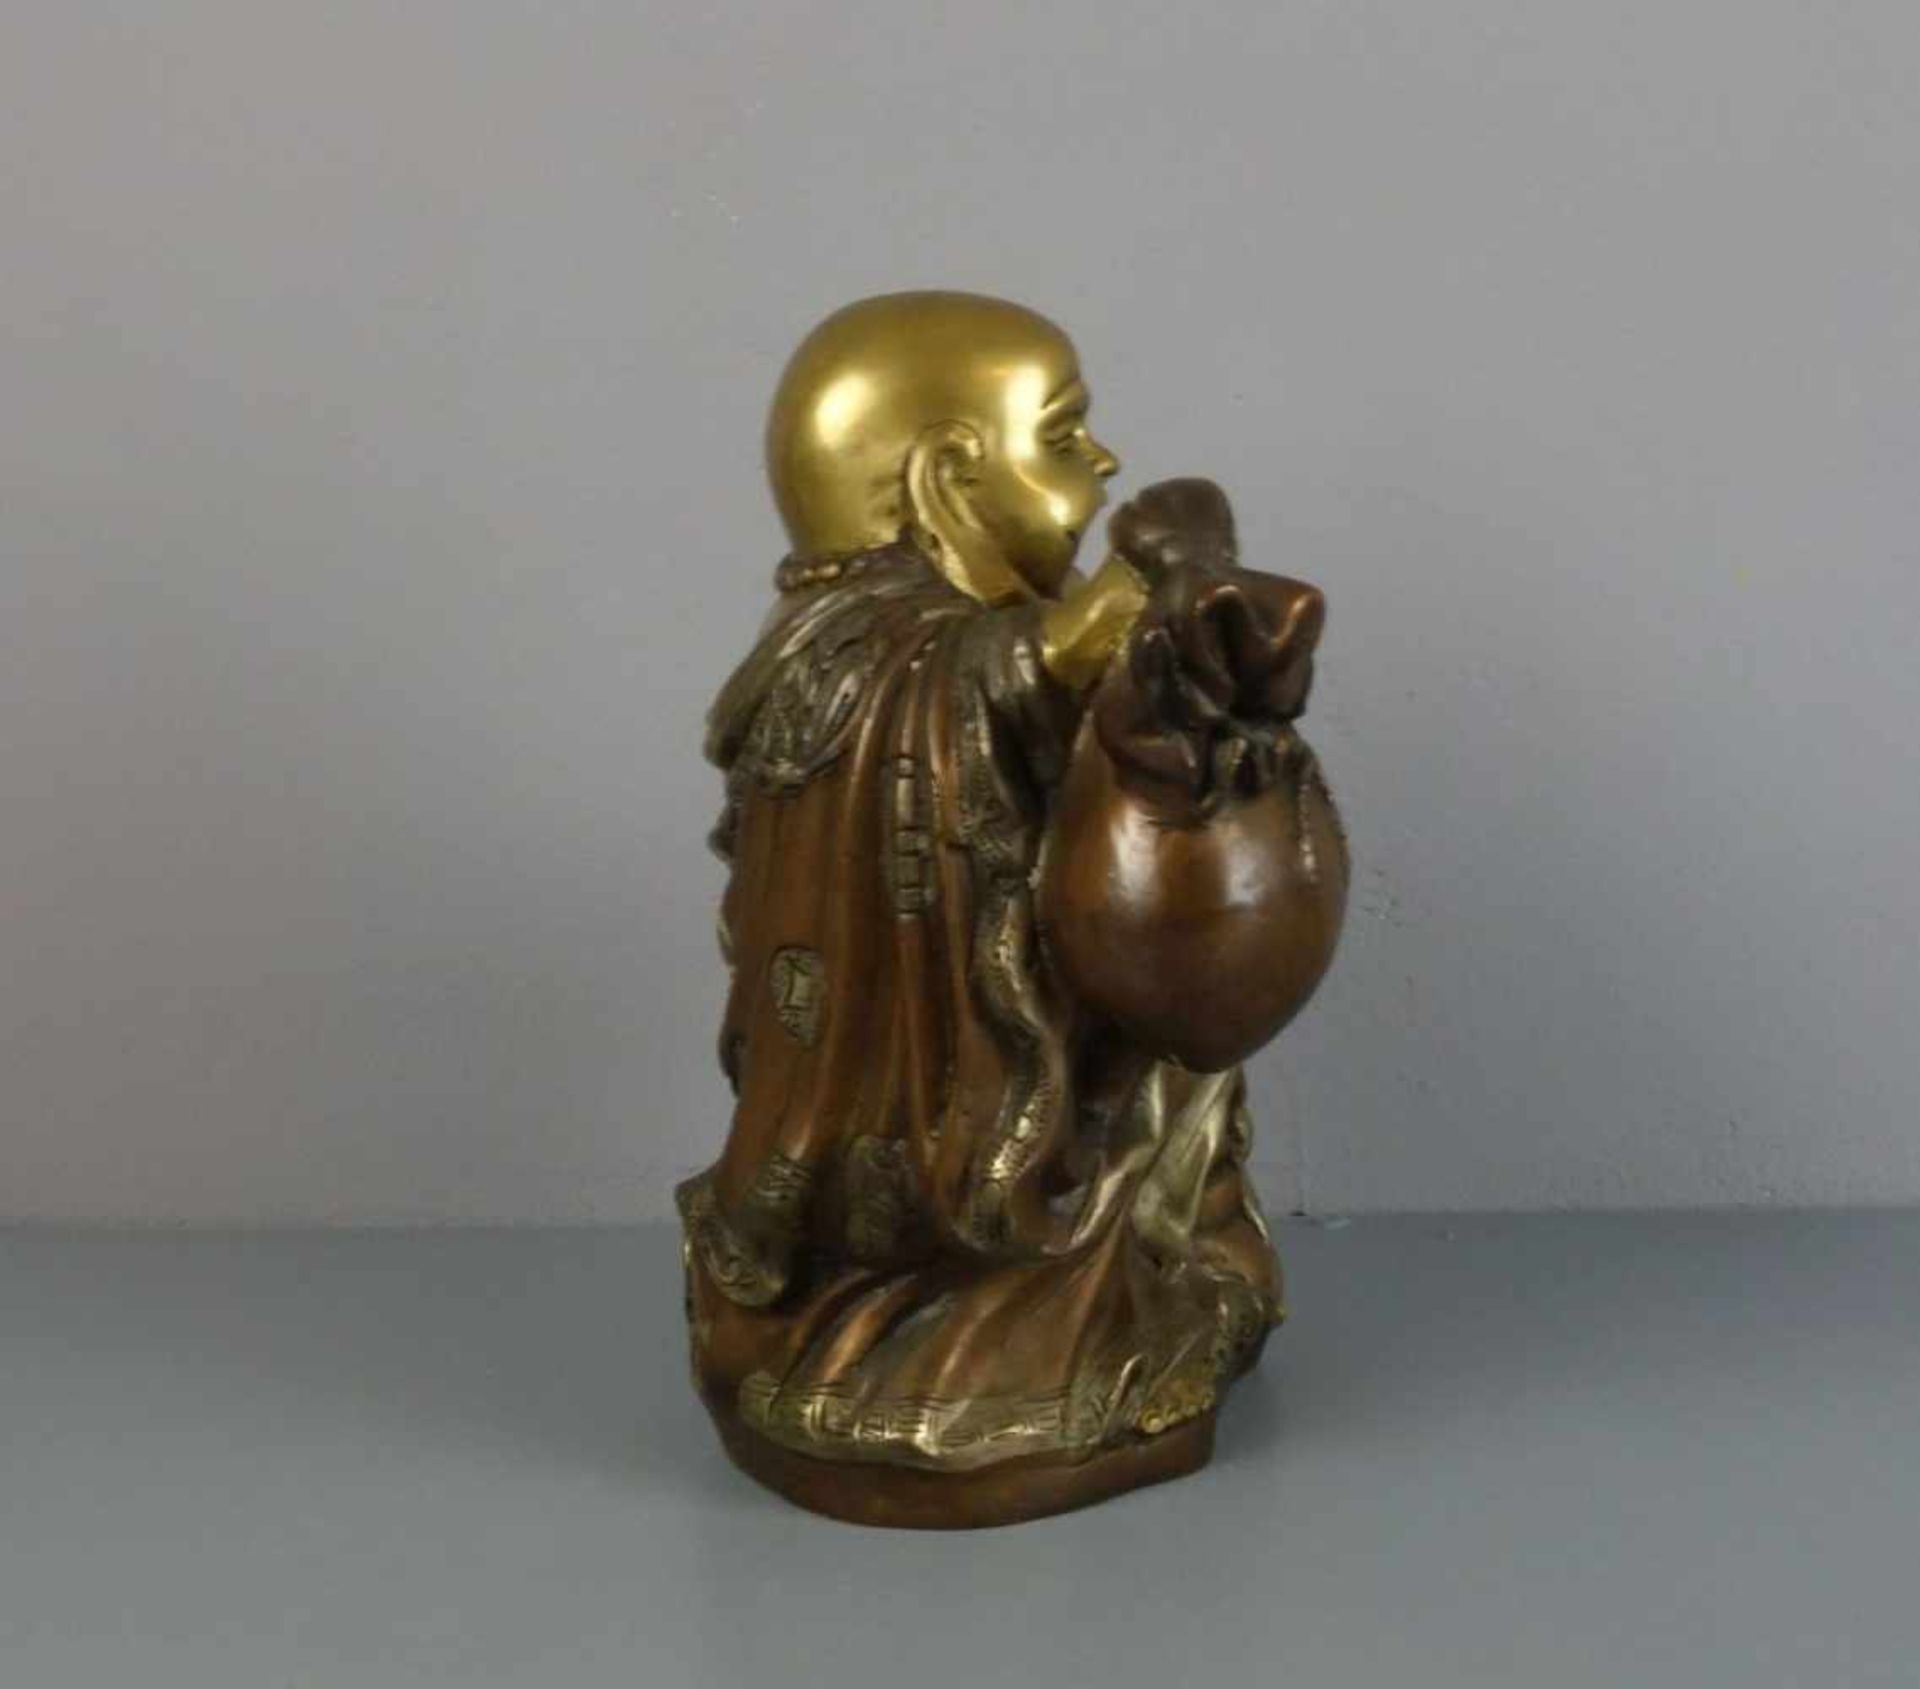 SKULPTUR: Buddha "Budai" / Glücksbuddha, Bronze, gold-, silber- und kupferfarben patiniert. Buddha - Bild 2 aus 5